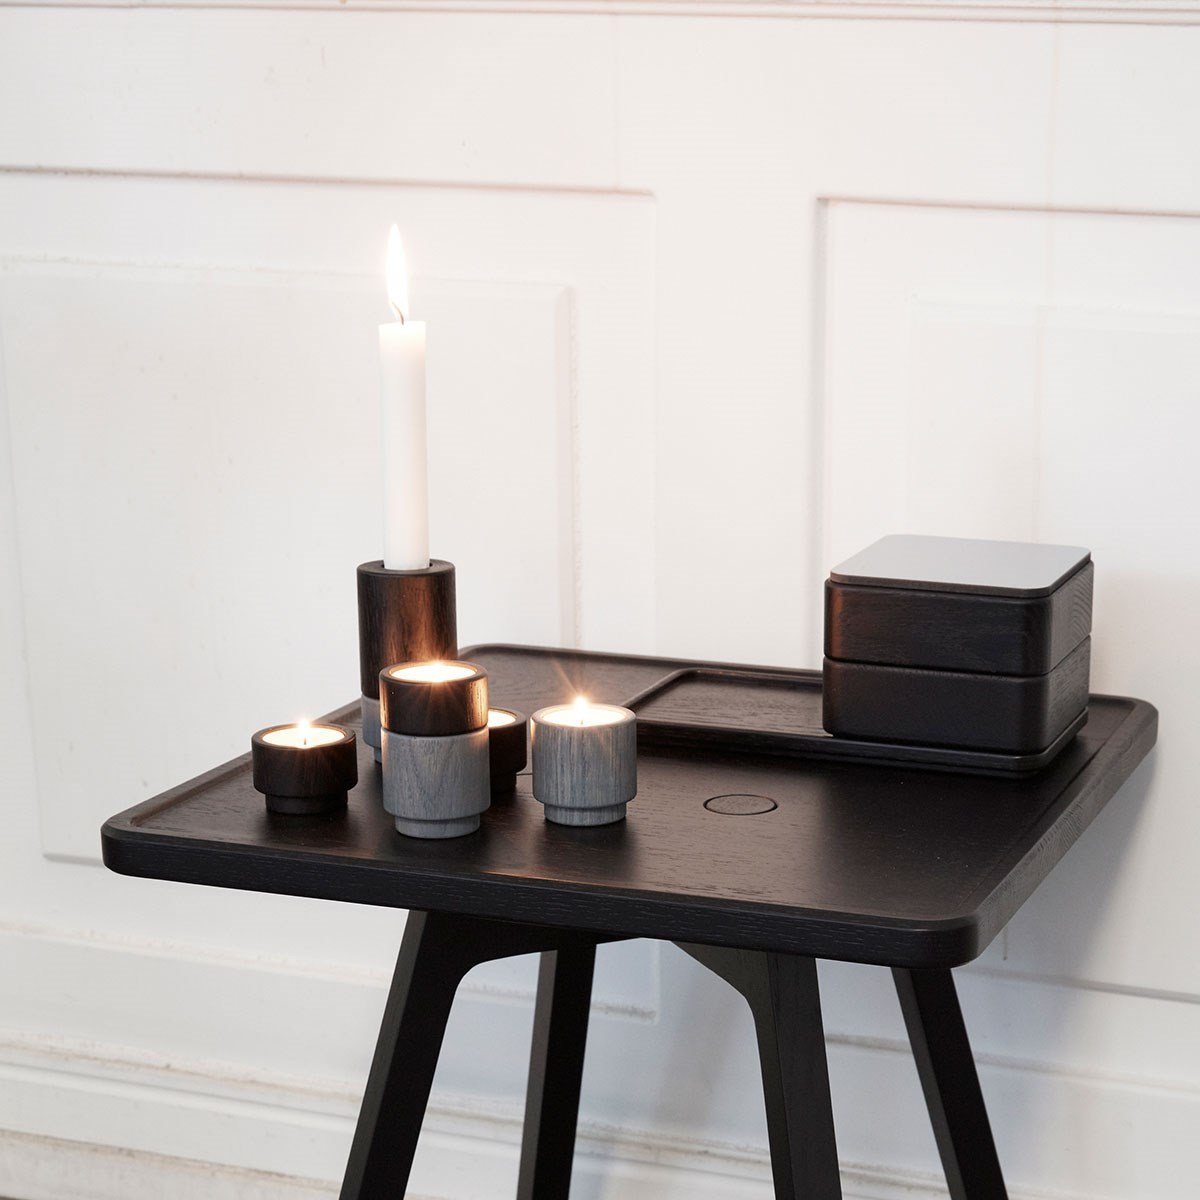 Andersen Furniture Create Me Tealight Holder Ocean Grey, 5cm